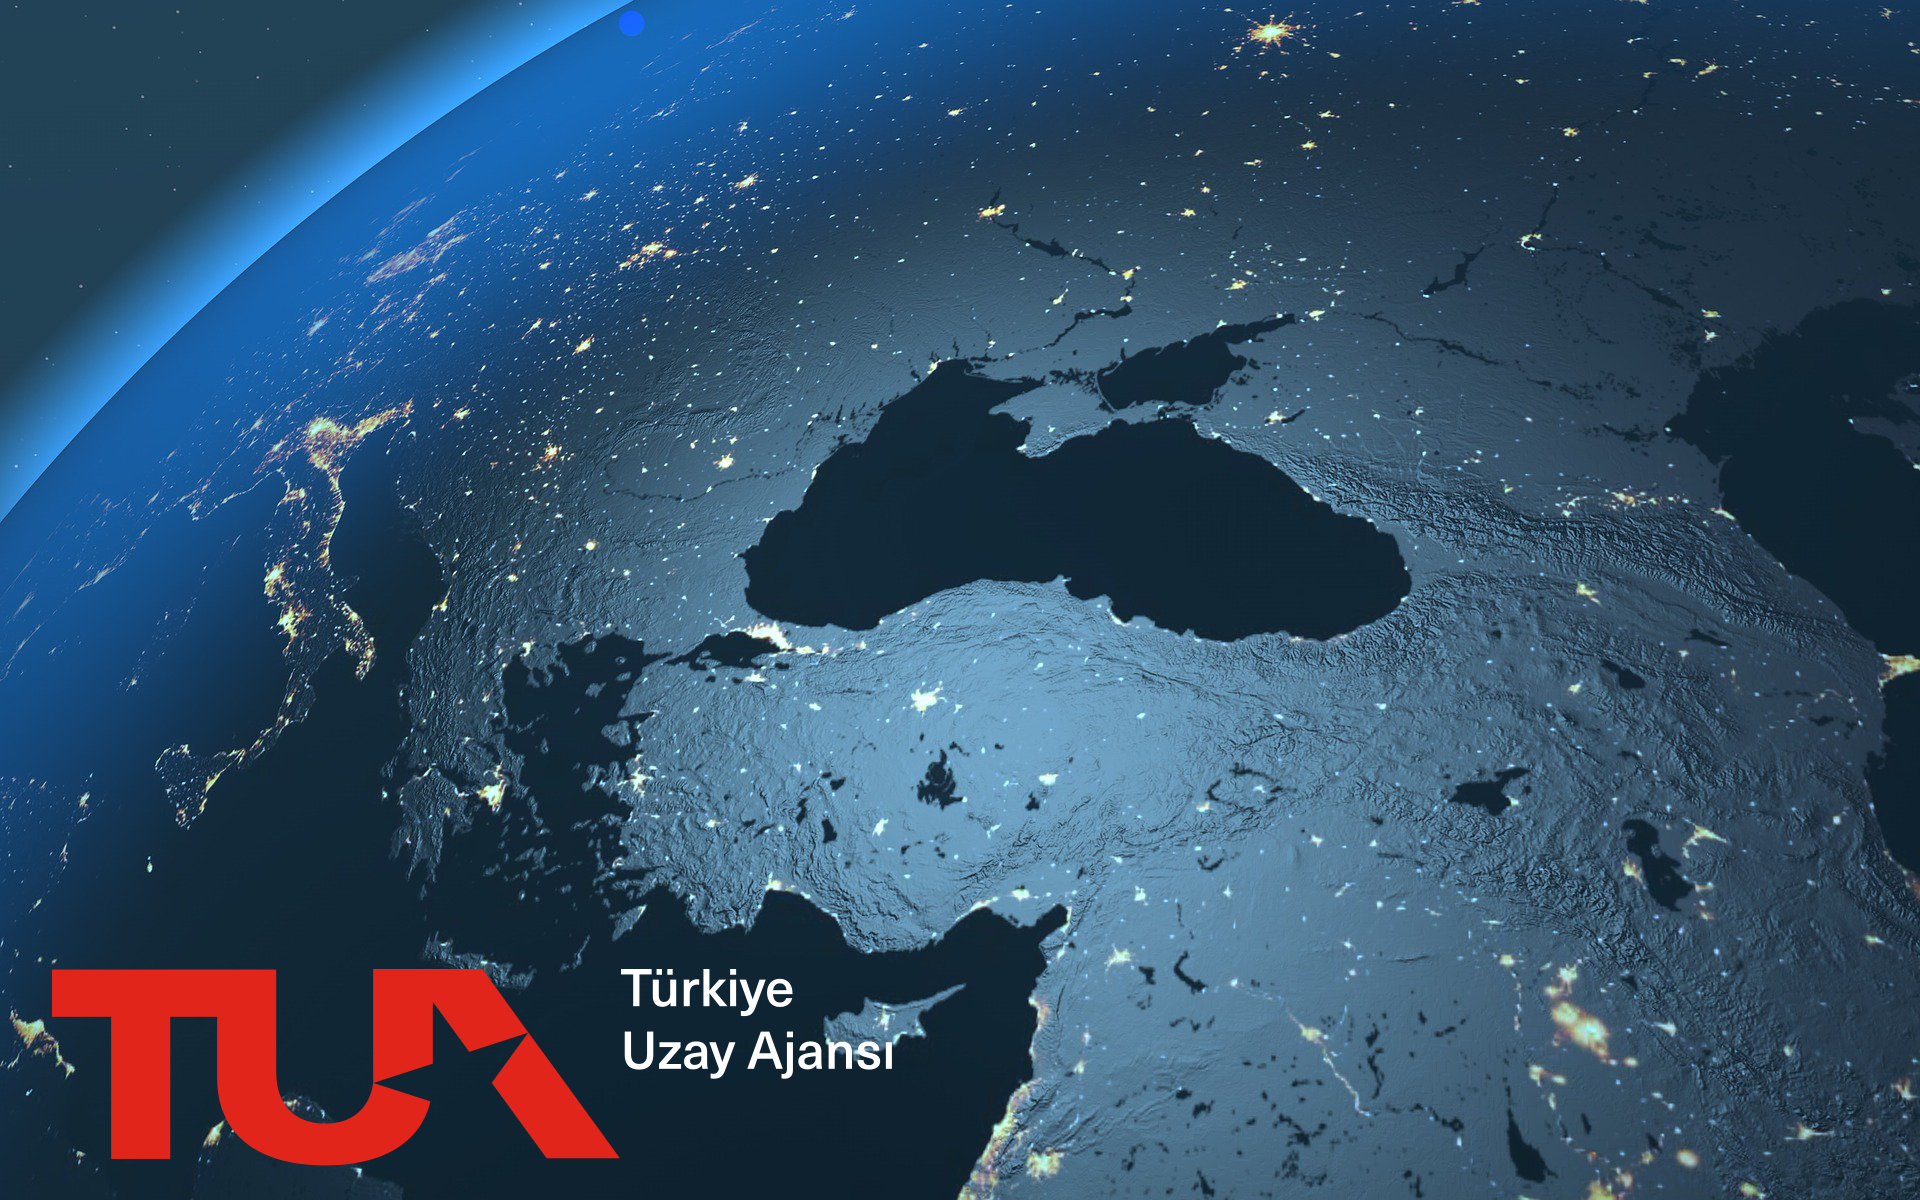 turkiye nin uzay programi gercekci mi pc gen tr